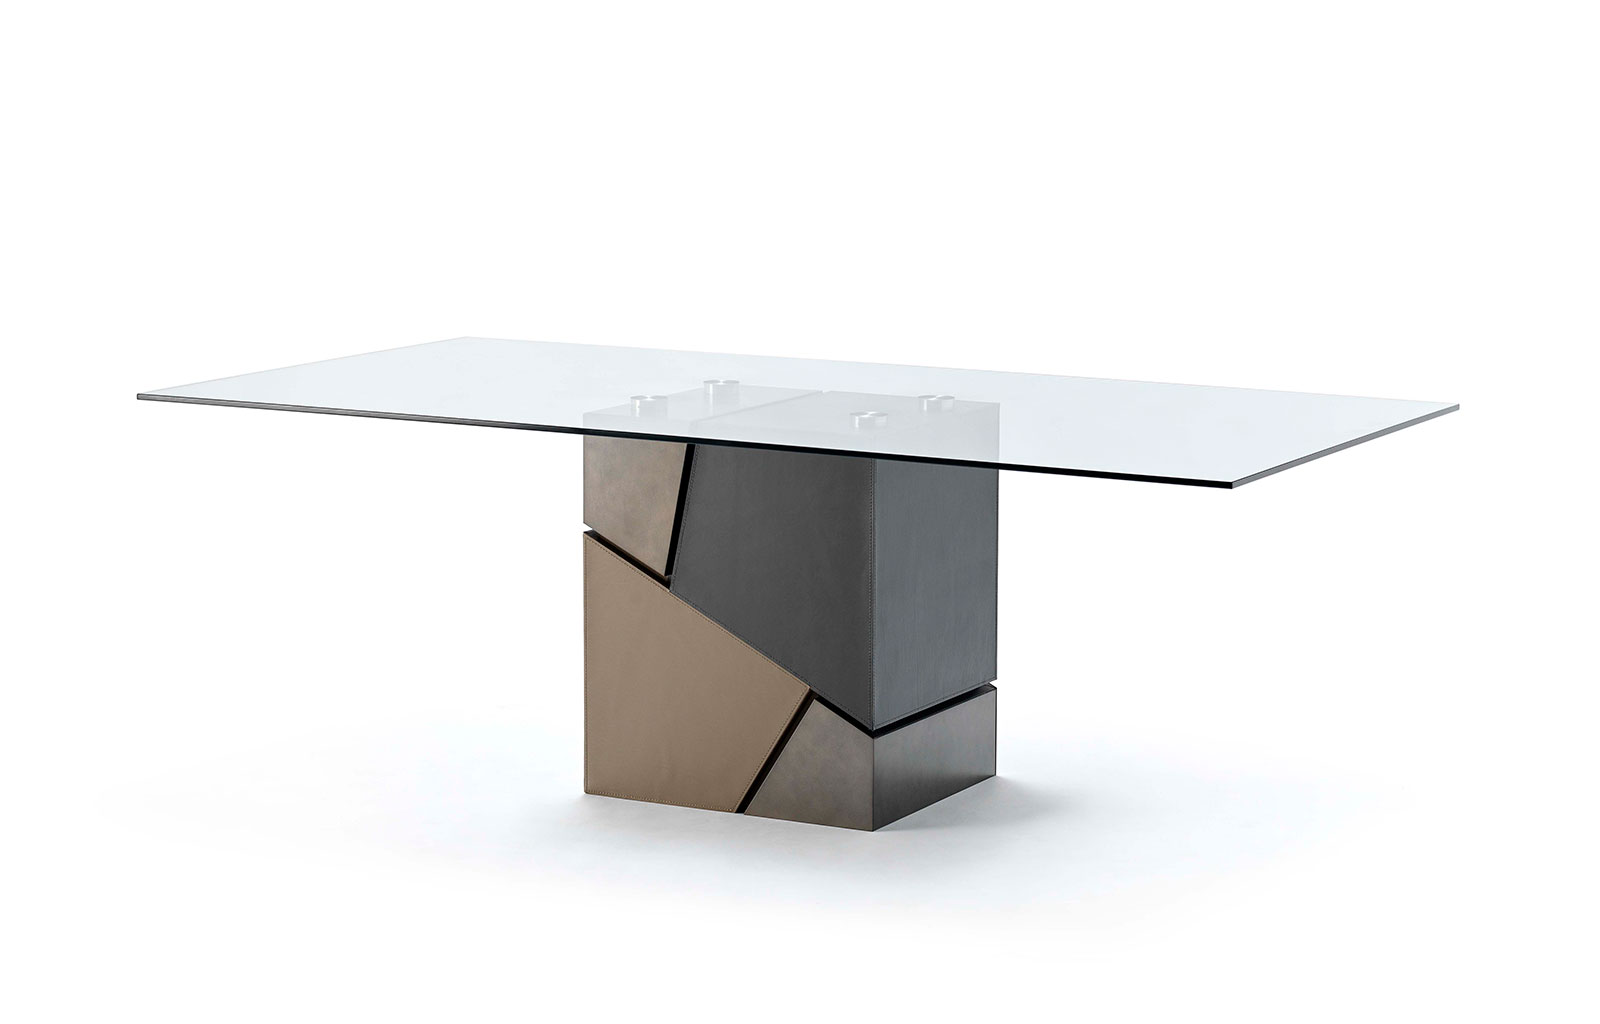 Sense tavolo da esterno 220/330 - Italy Dream Design